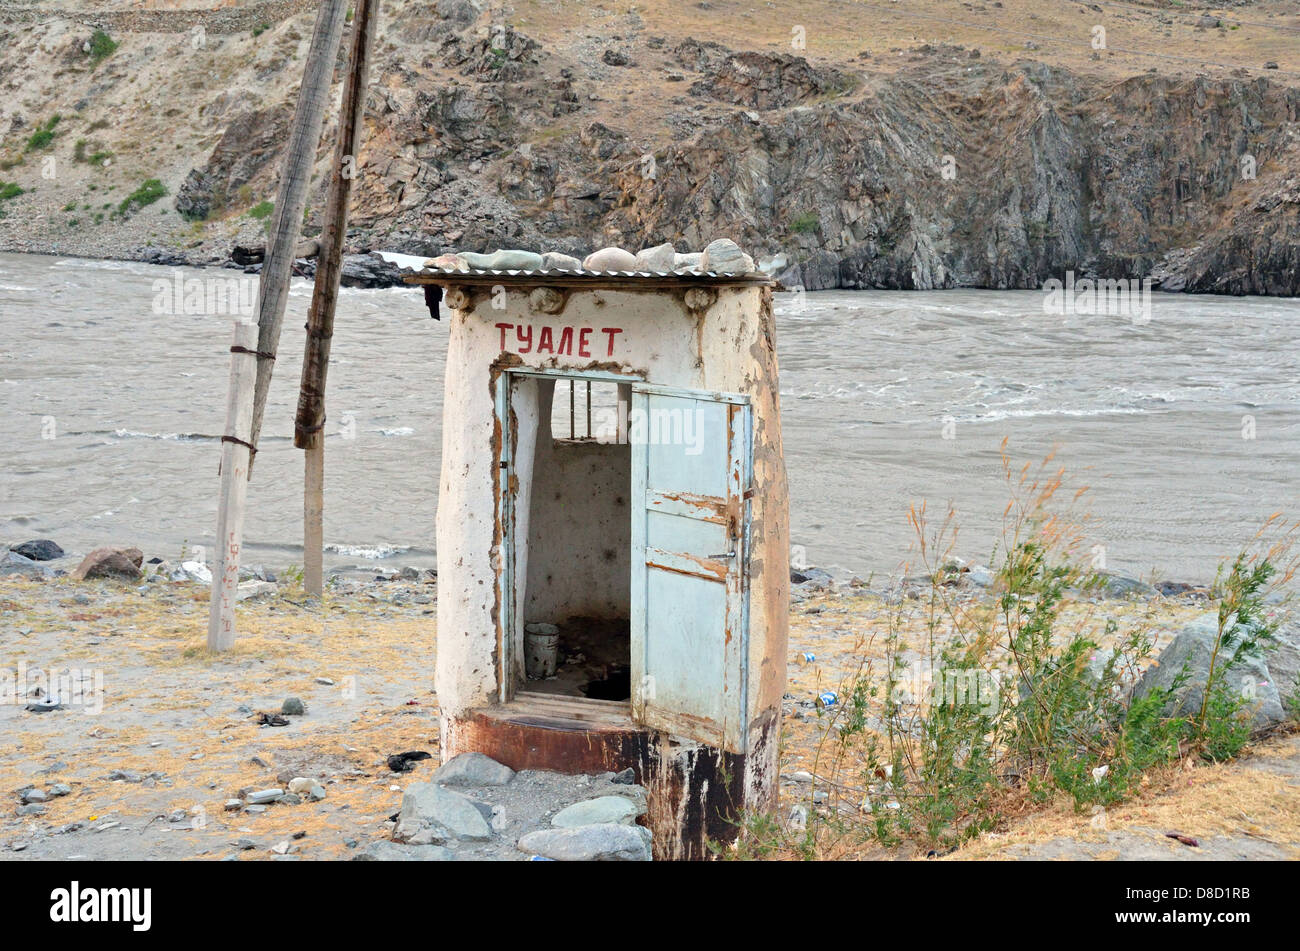 Toilet along the roadside in Tajikistan Stock Photo